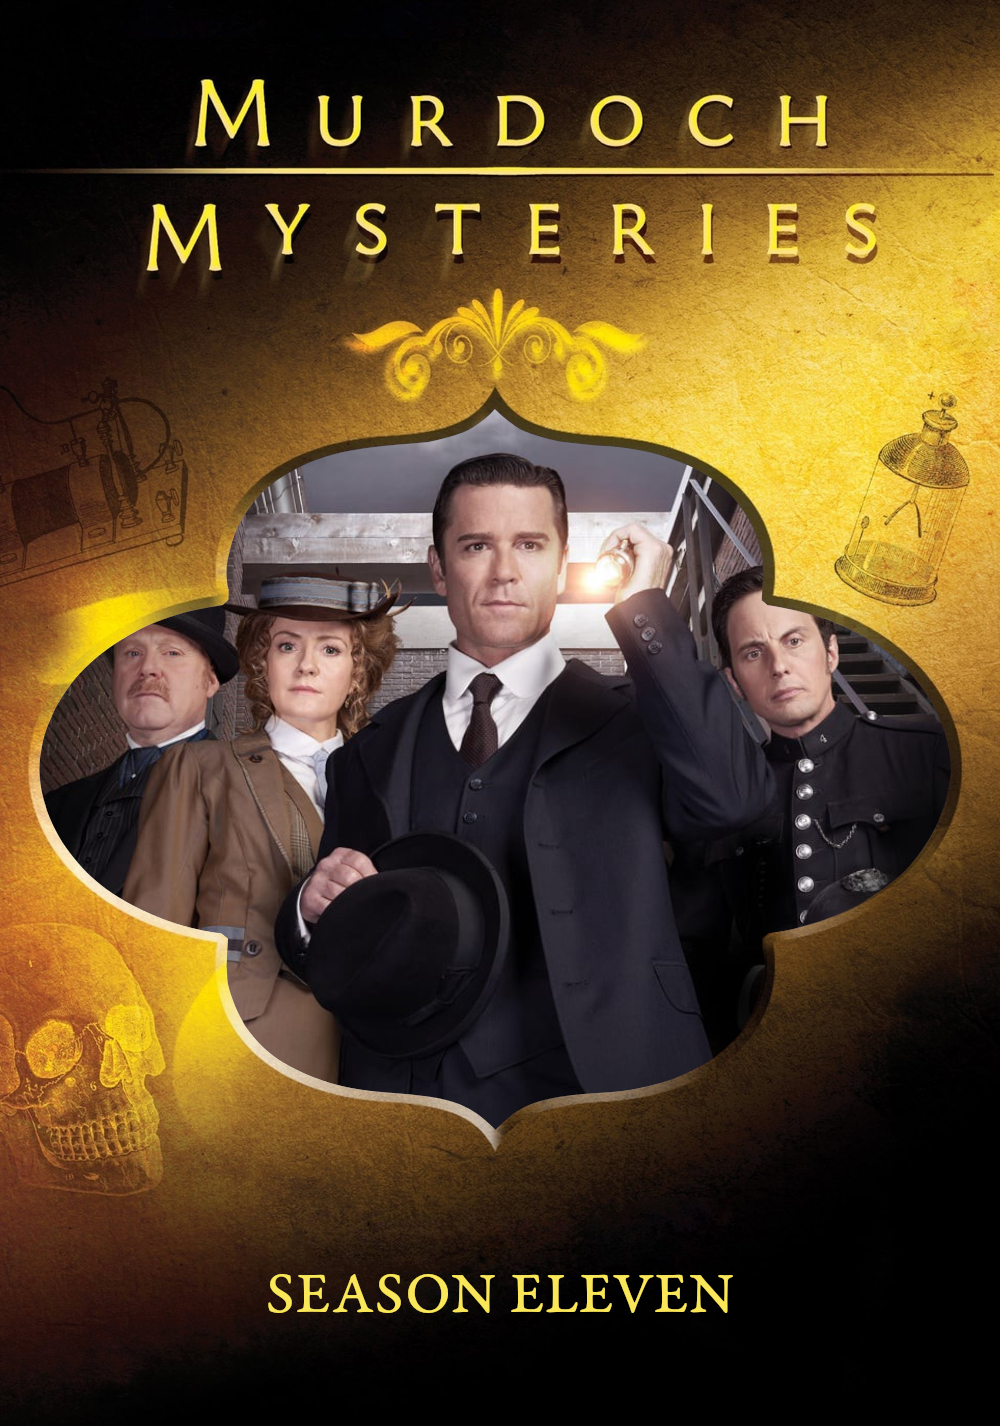 Murdoch Mysteries (2008) S11pt2 E10->E18 NLsubs